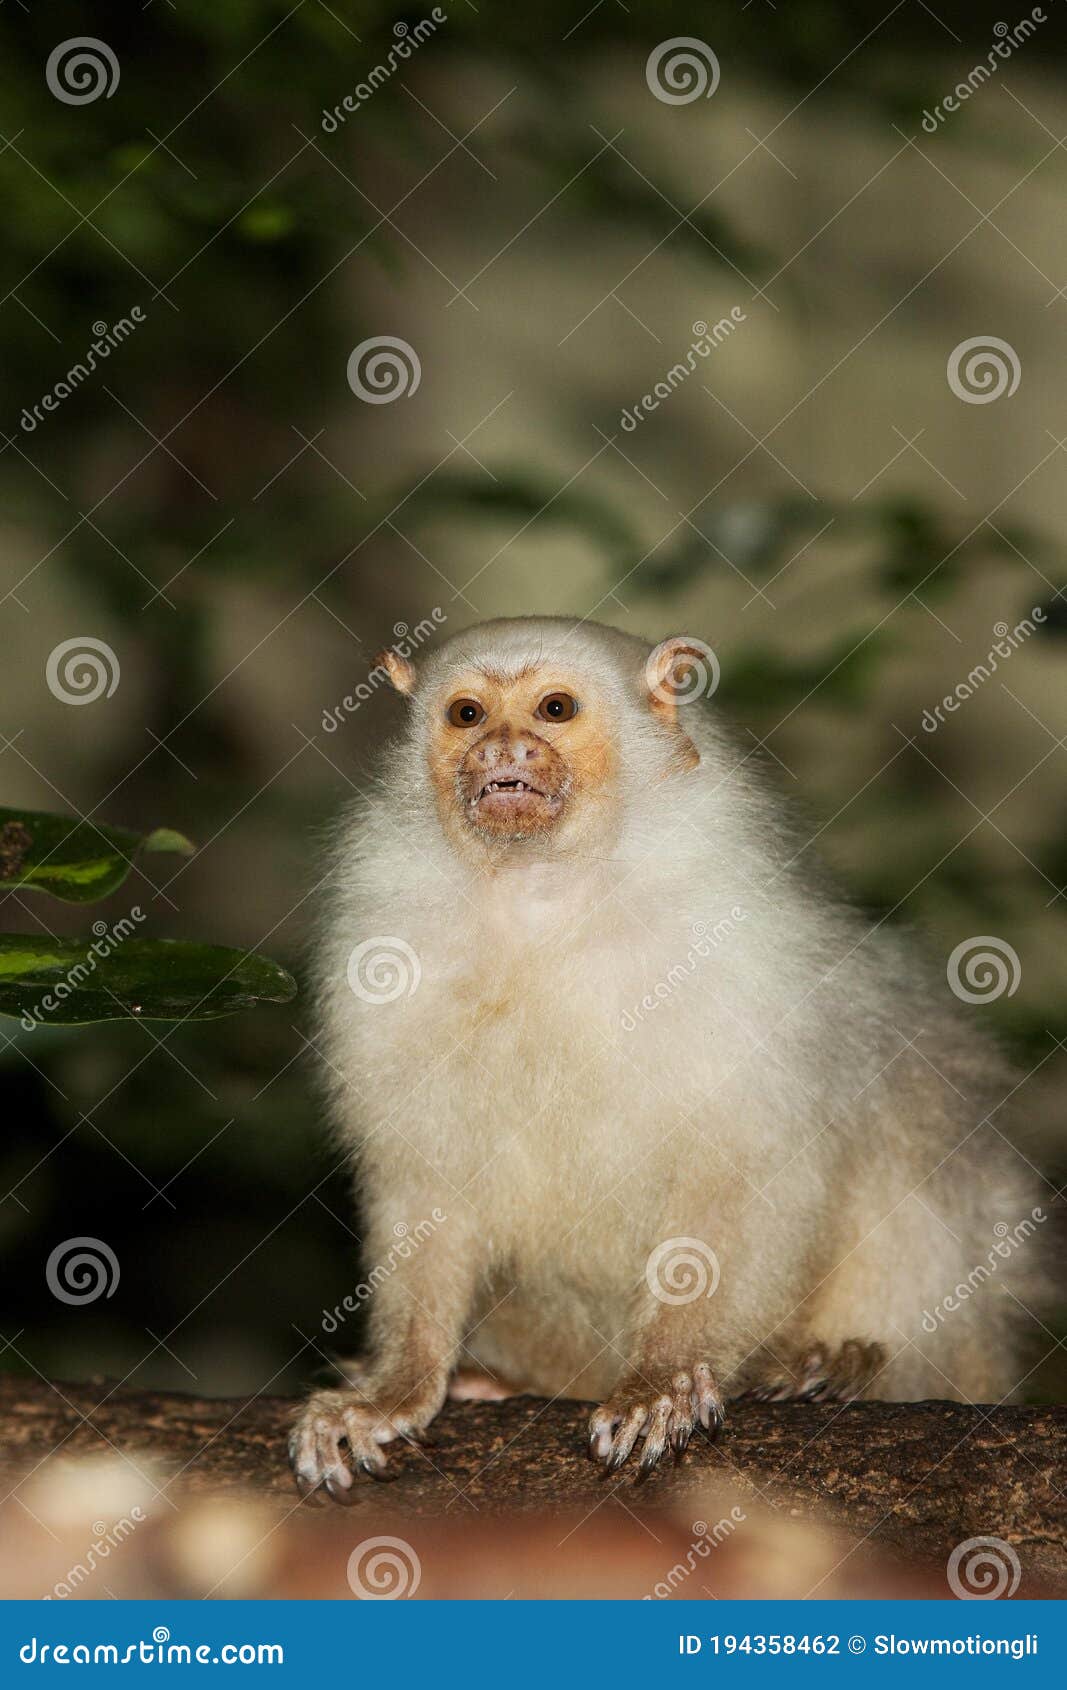 silvery marmoset mico argentatus